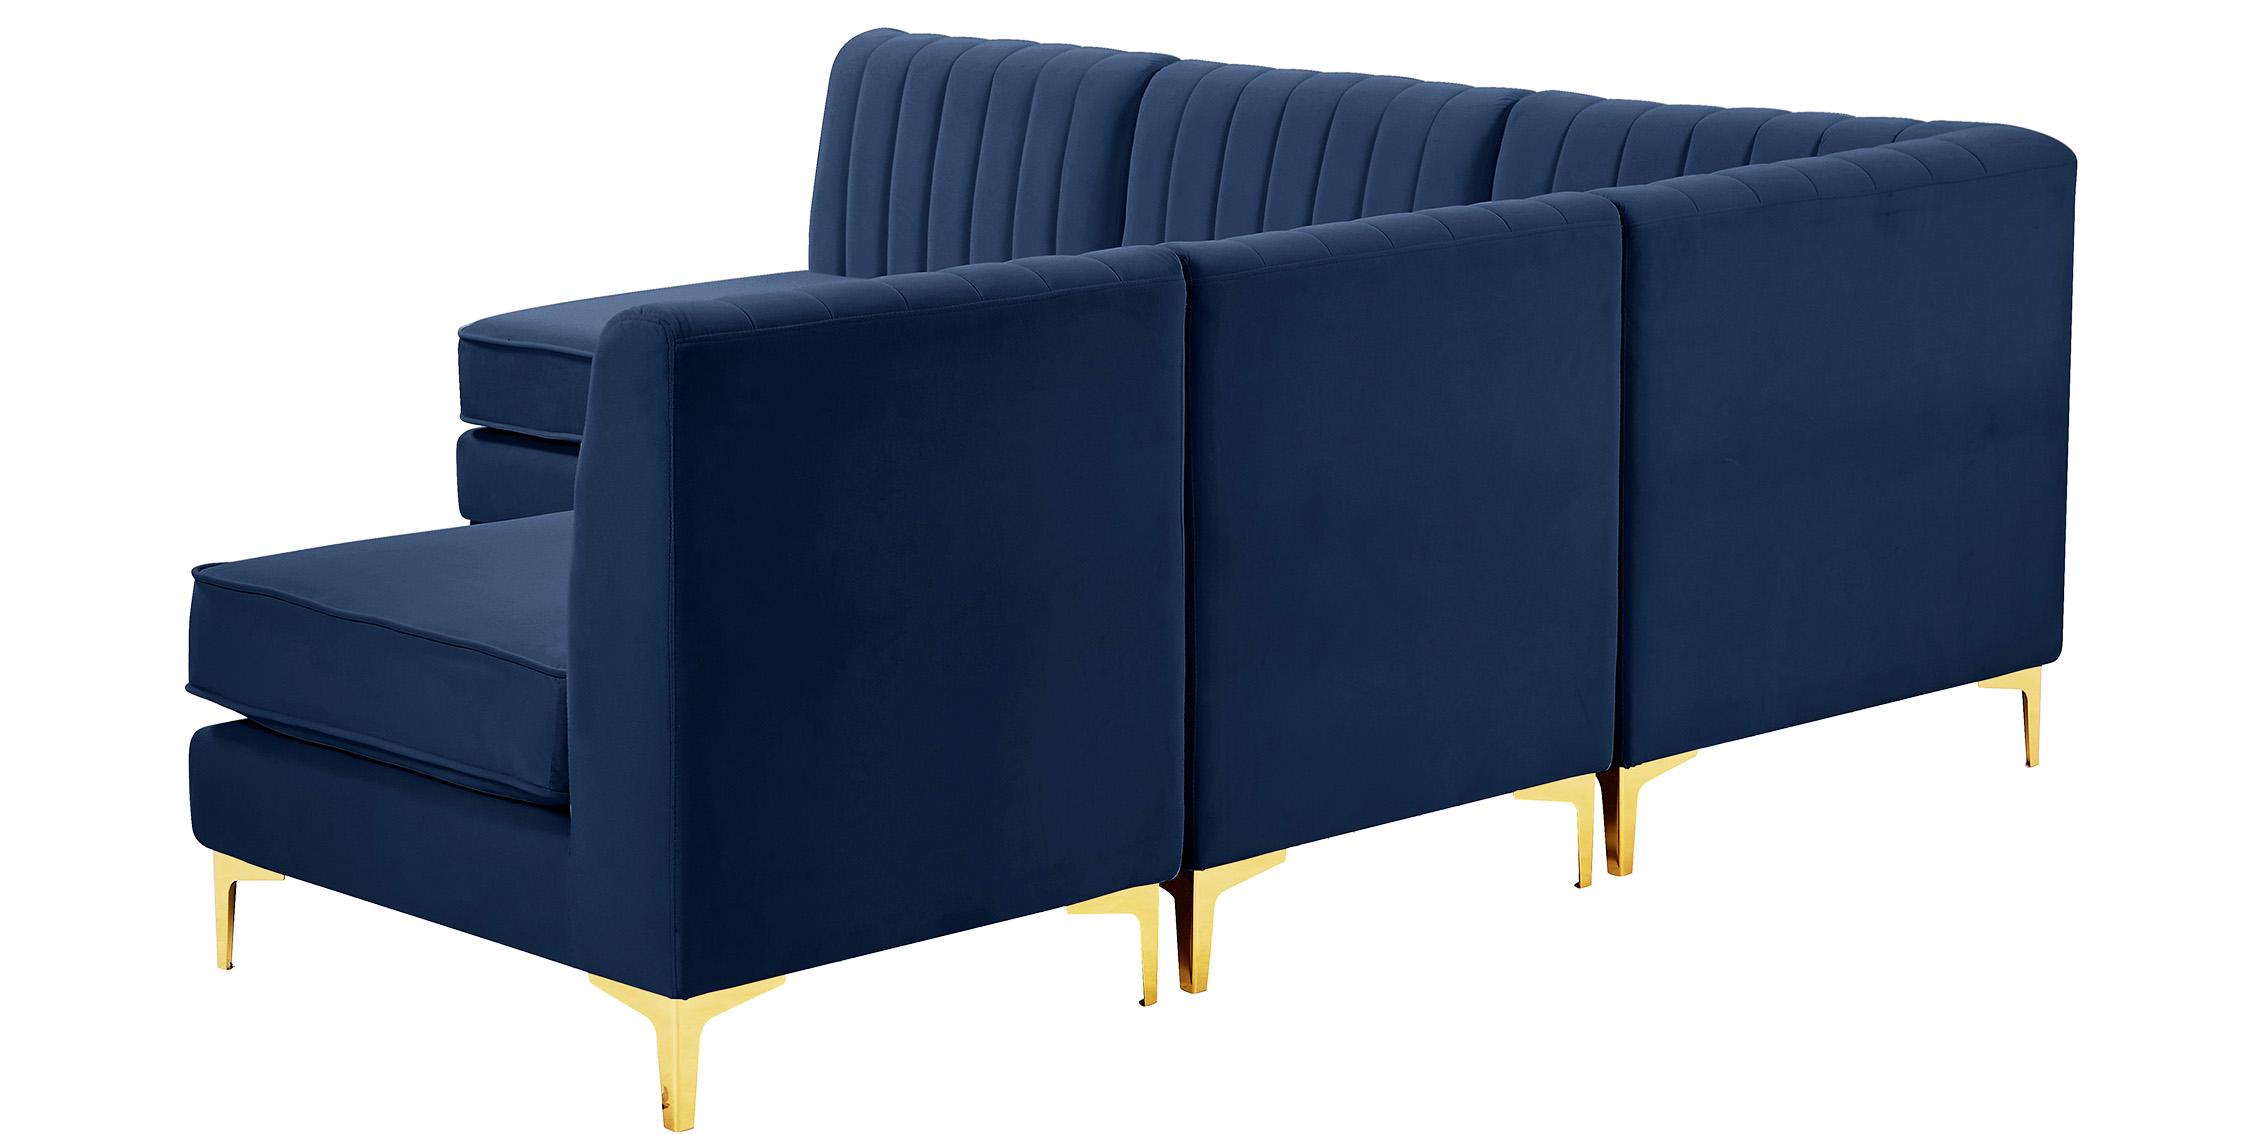 

    
604Navy-Sec5A Meridian Furniture Modular Sectional Sofa
